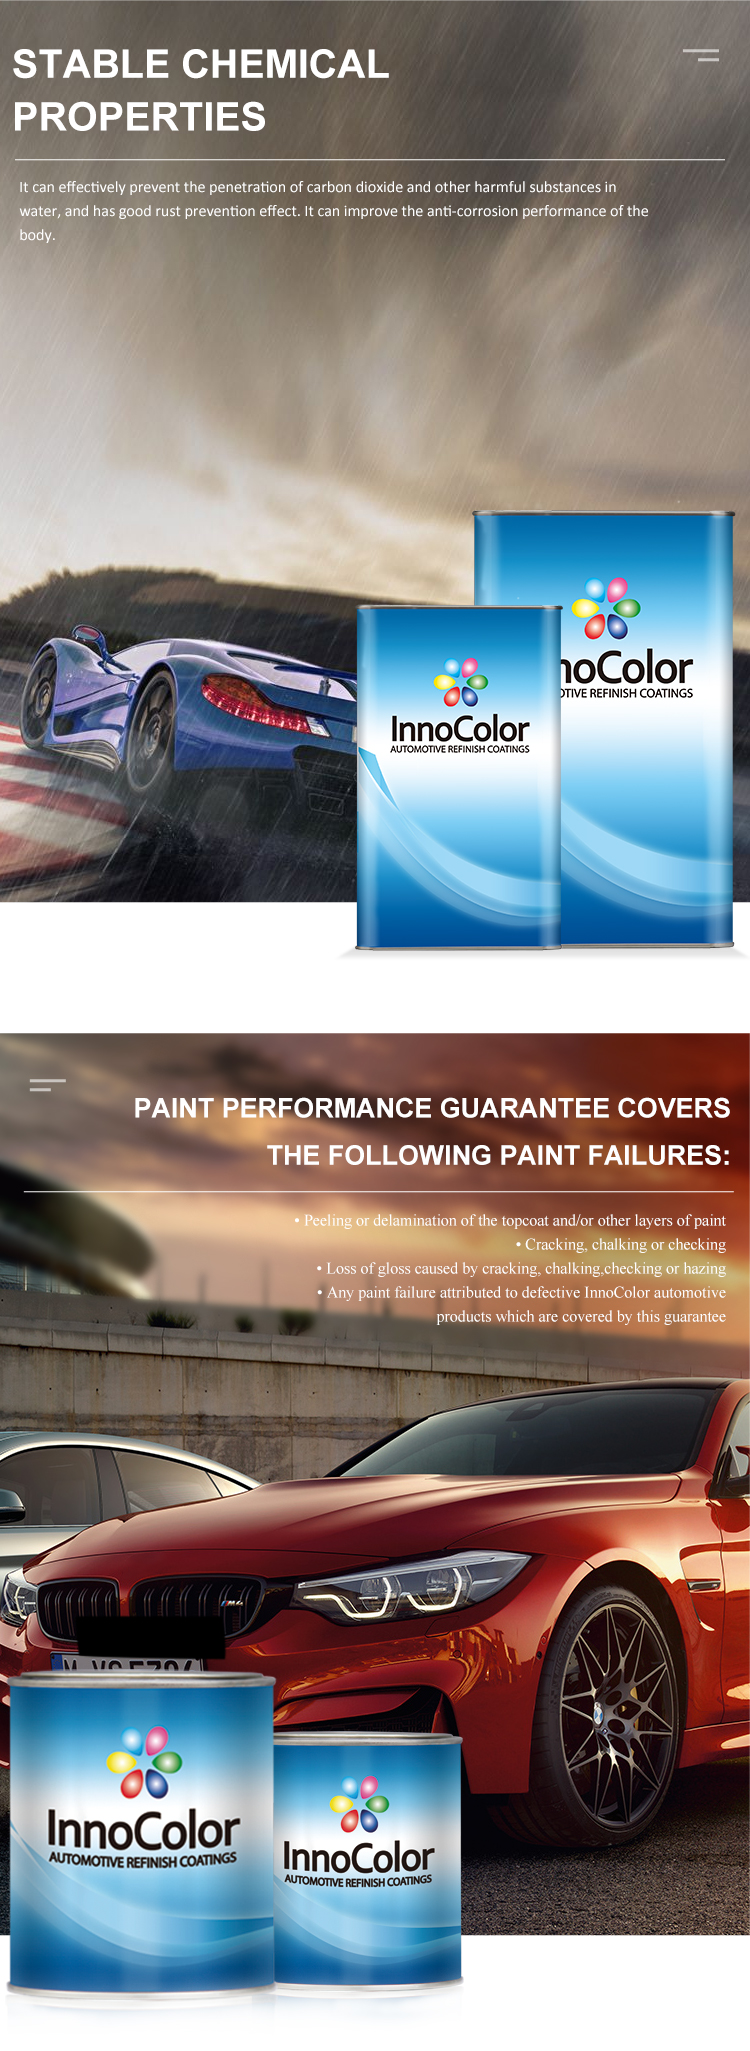 Couche transparente innocolor Clearcoat High Gloss Car peinture de peinture miroir de peinture auto